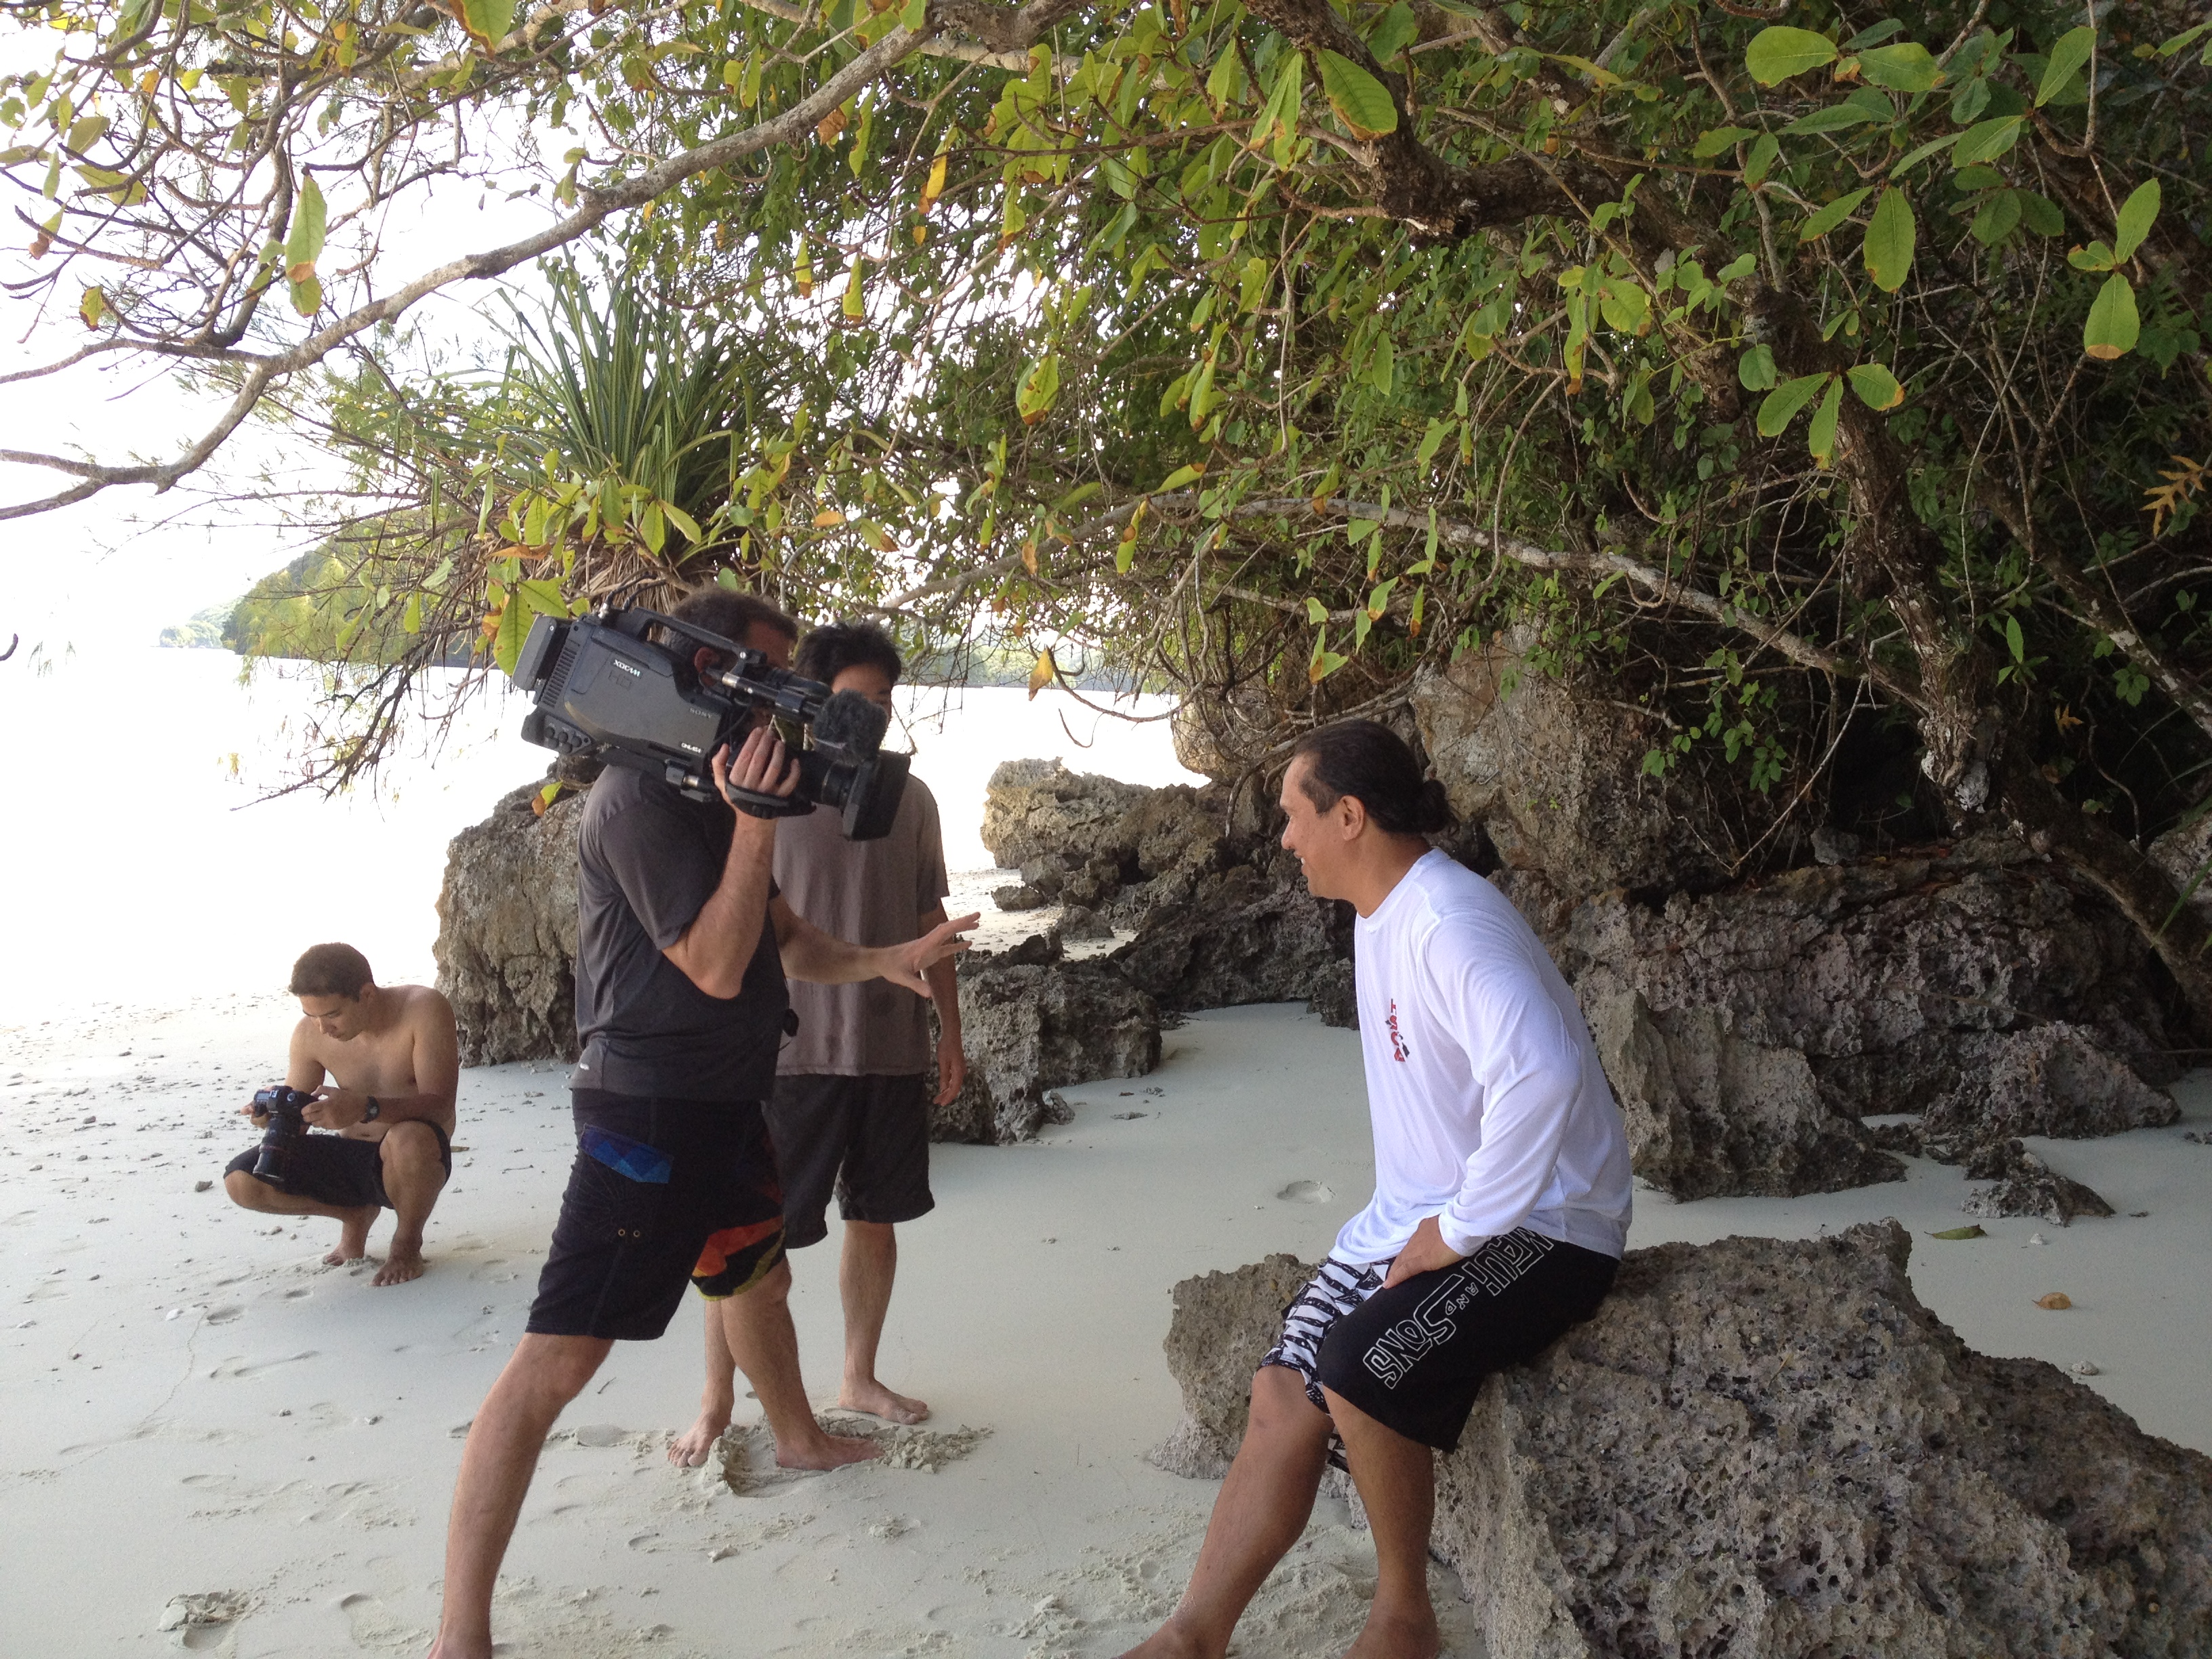 Interview op het strand in Palau, Micronesië. Foto © TNC